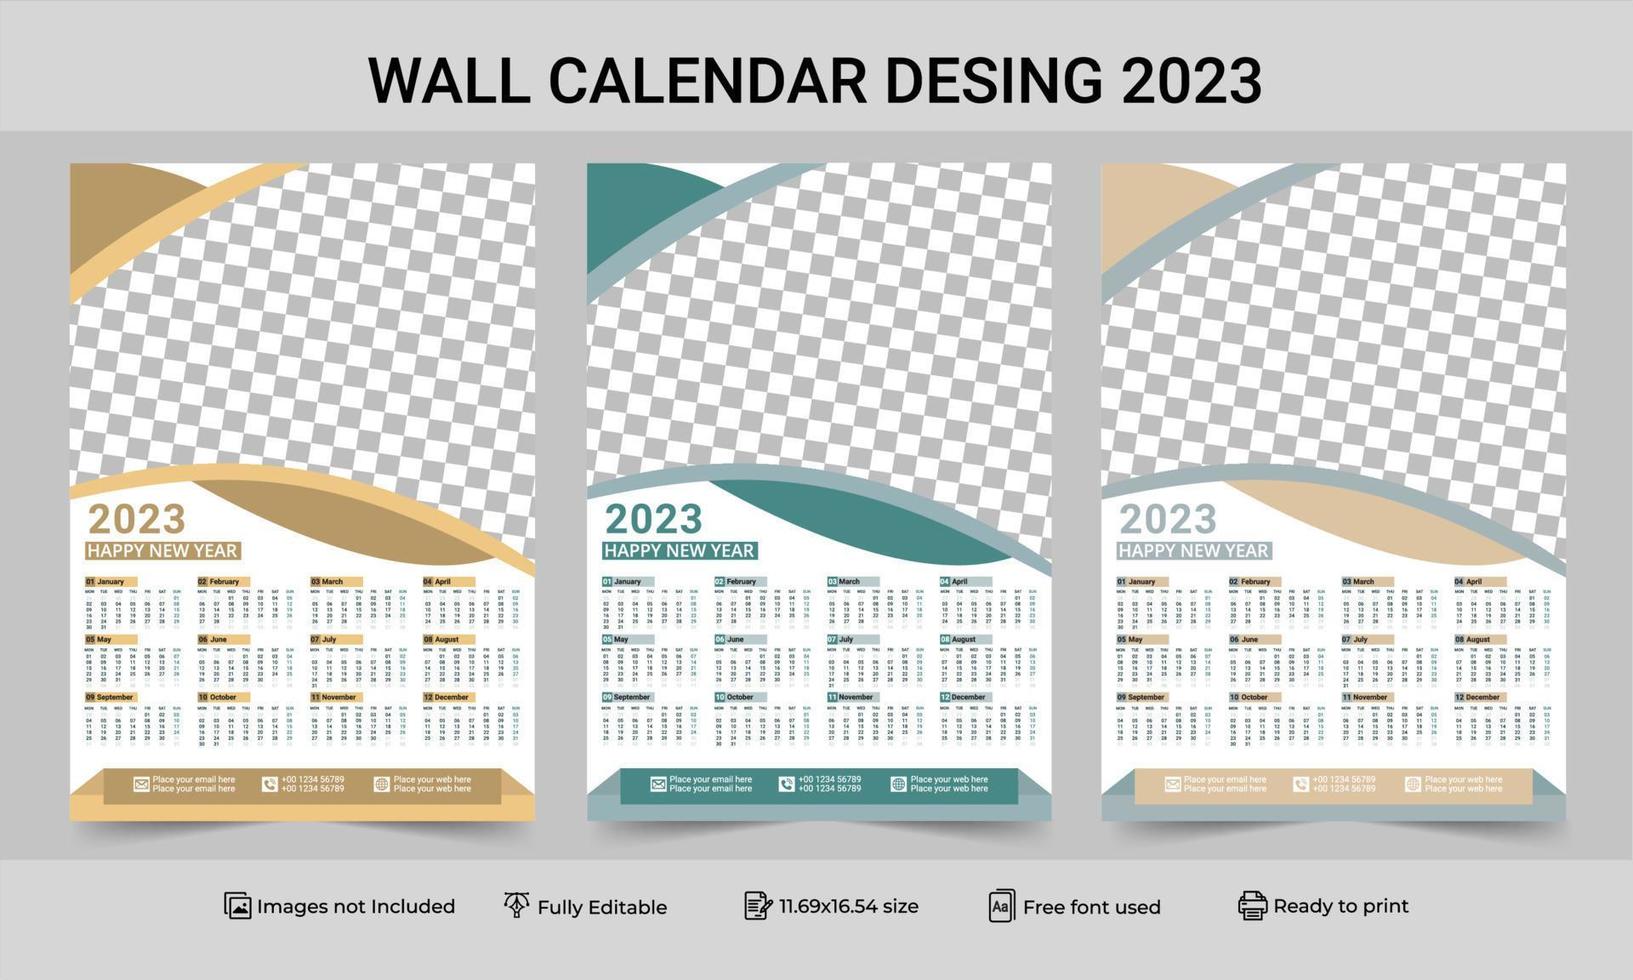 1 Seite Wandkalender 2023 Vorlage mit 3 Farbvariationen. Drucken Sie eine Seite Wandkalender-Vorlagendesign für 2023. 2023-Kalenderjahr-Vektorillustration. einseitiger Wandkalender 2023 vektor